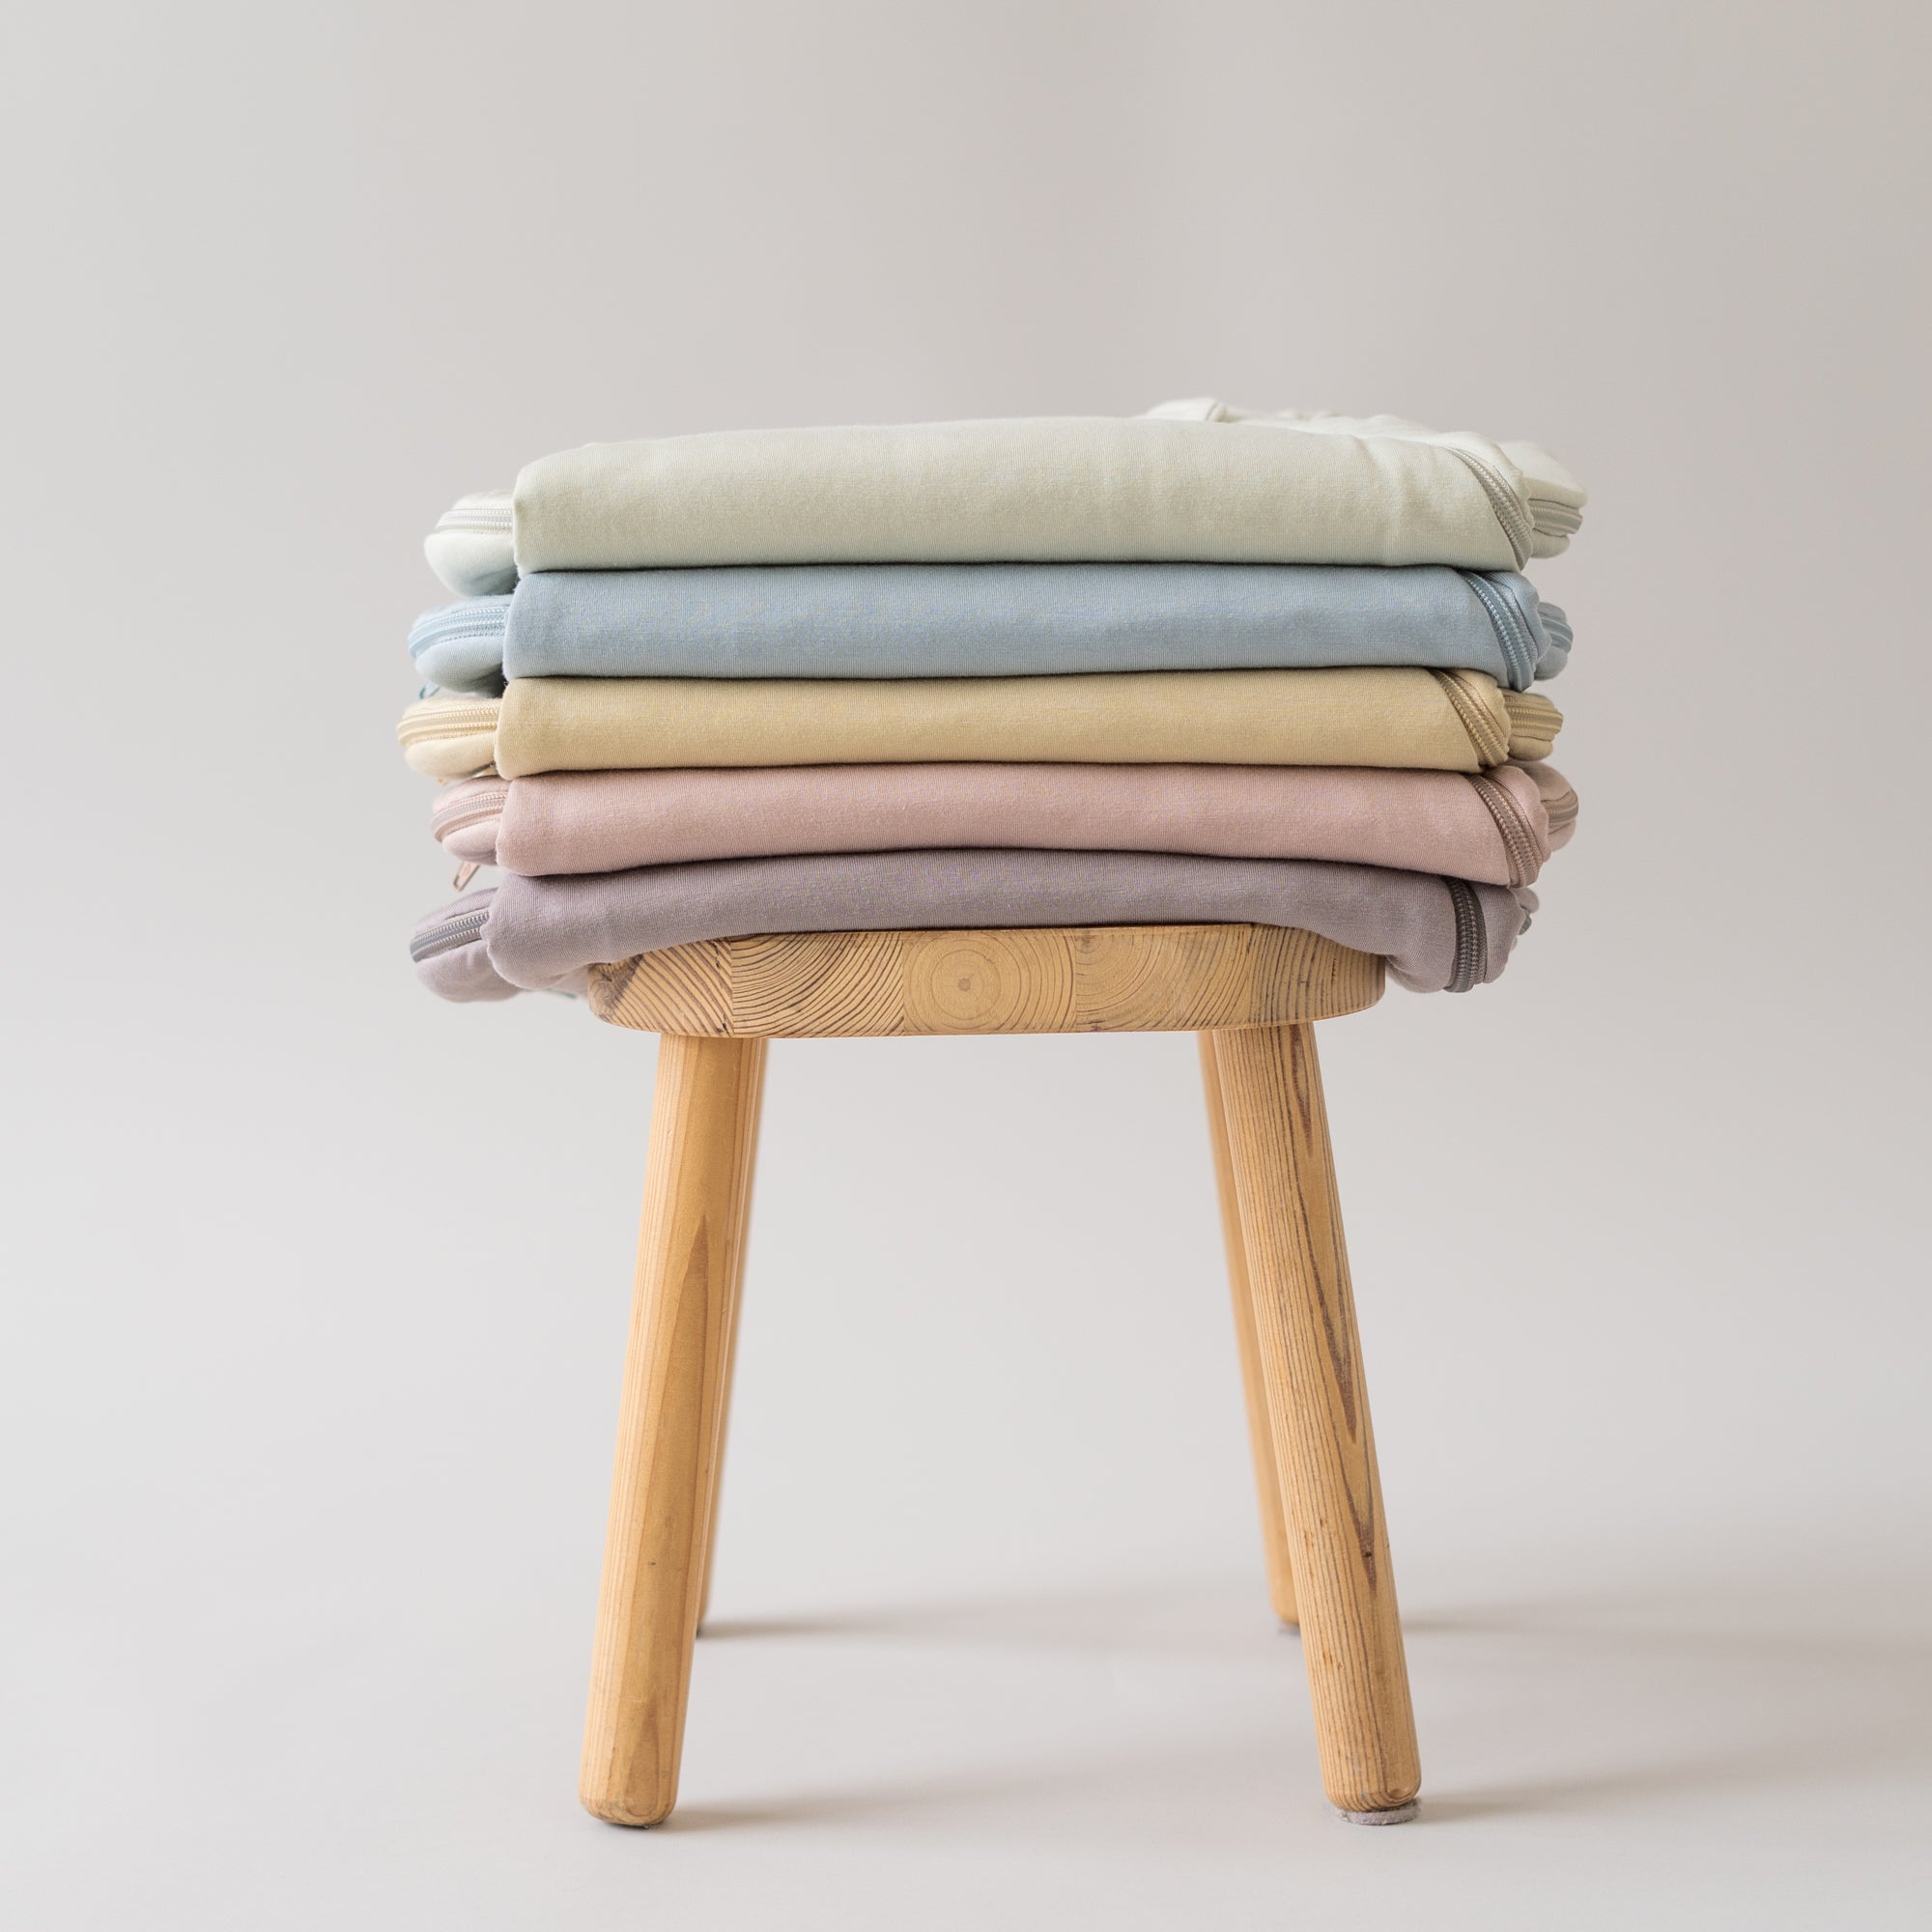 5 sleep bags folded on a stool in aloe, fog, wheat, sunset, mushroom